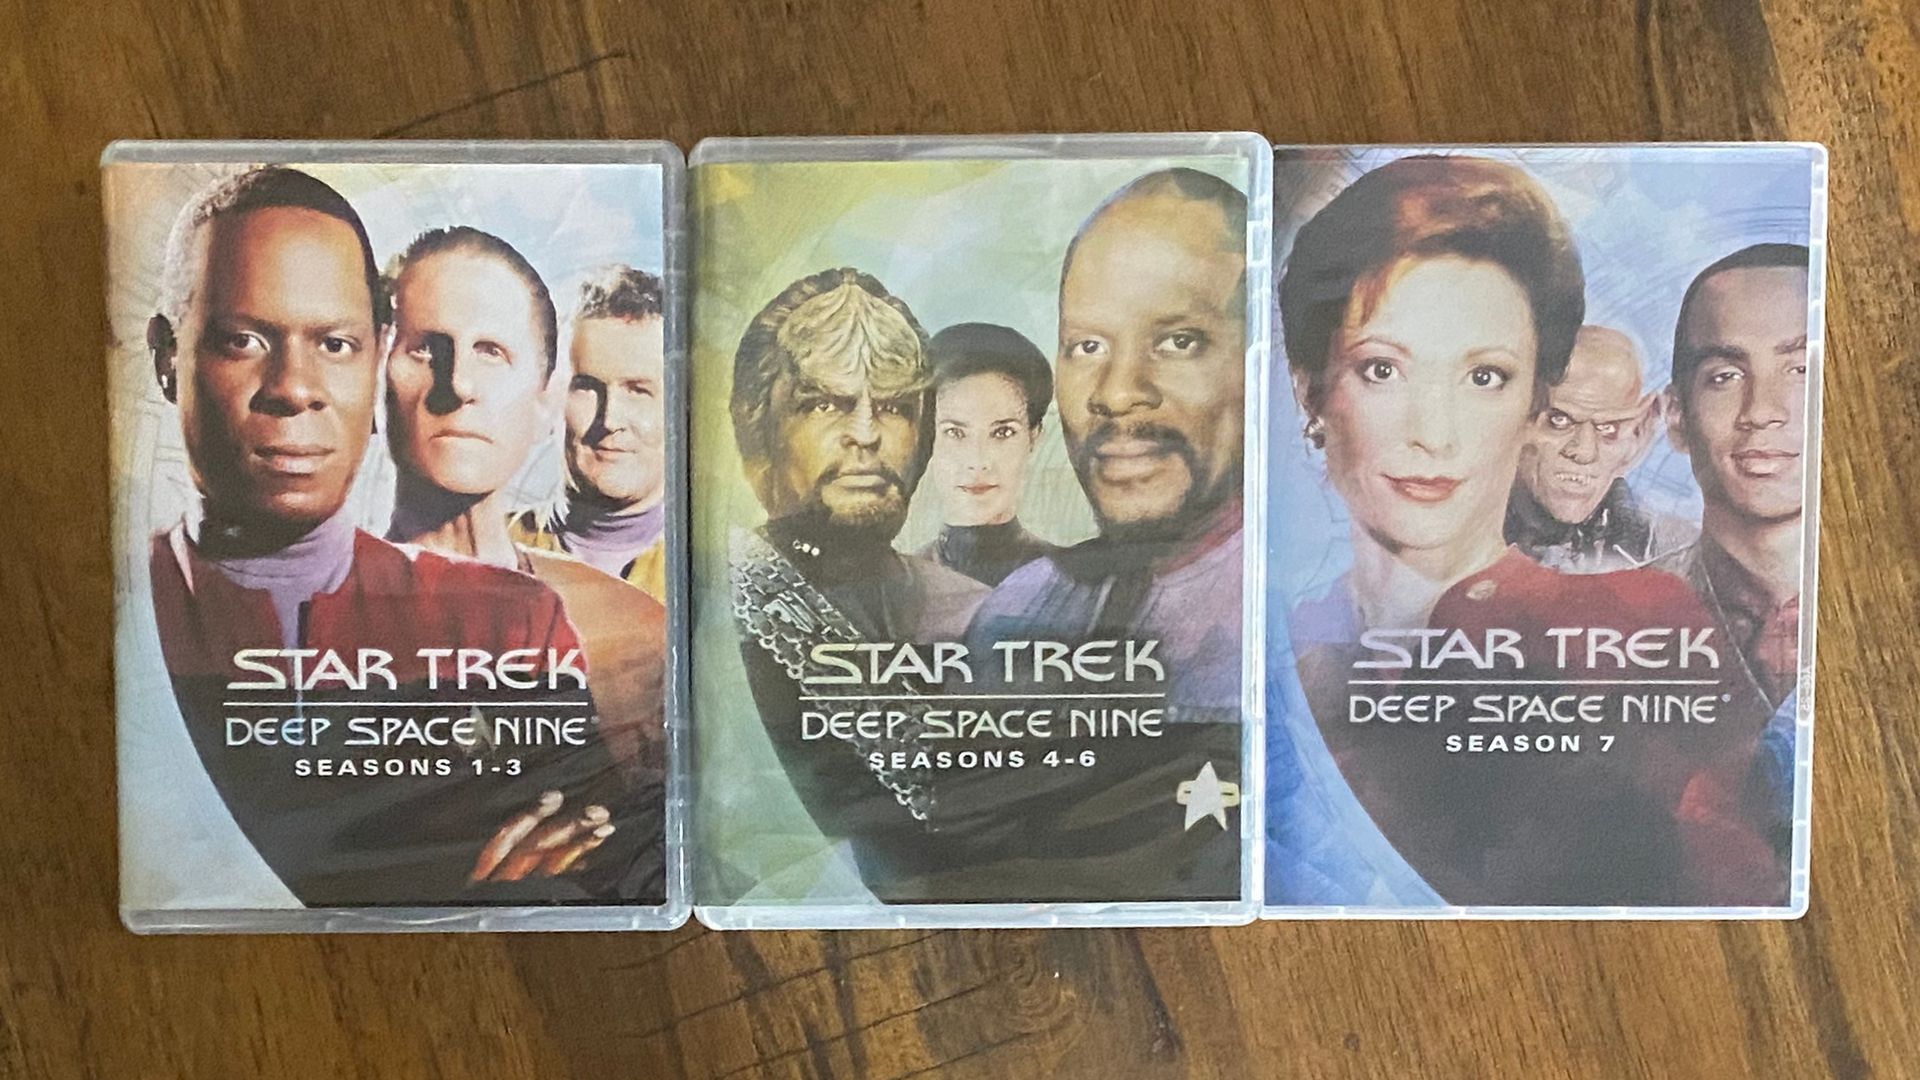 Three boxes of Star Trek: Deep Space Nine DVDs